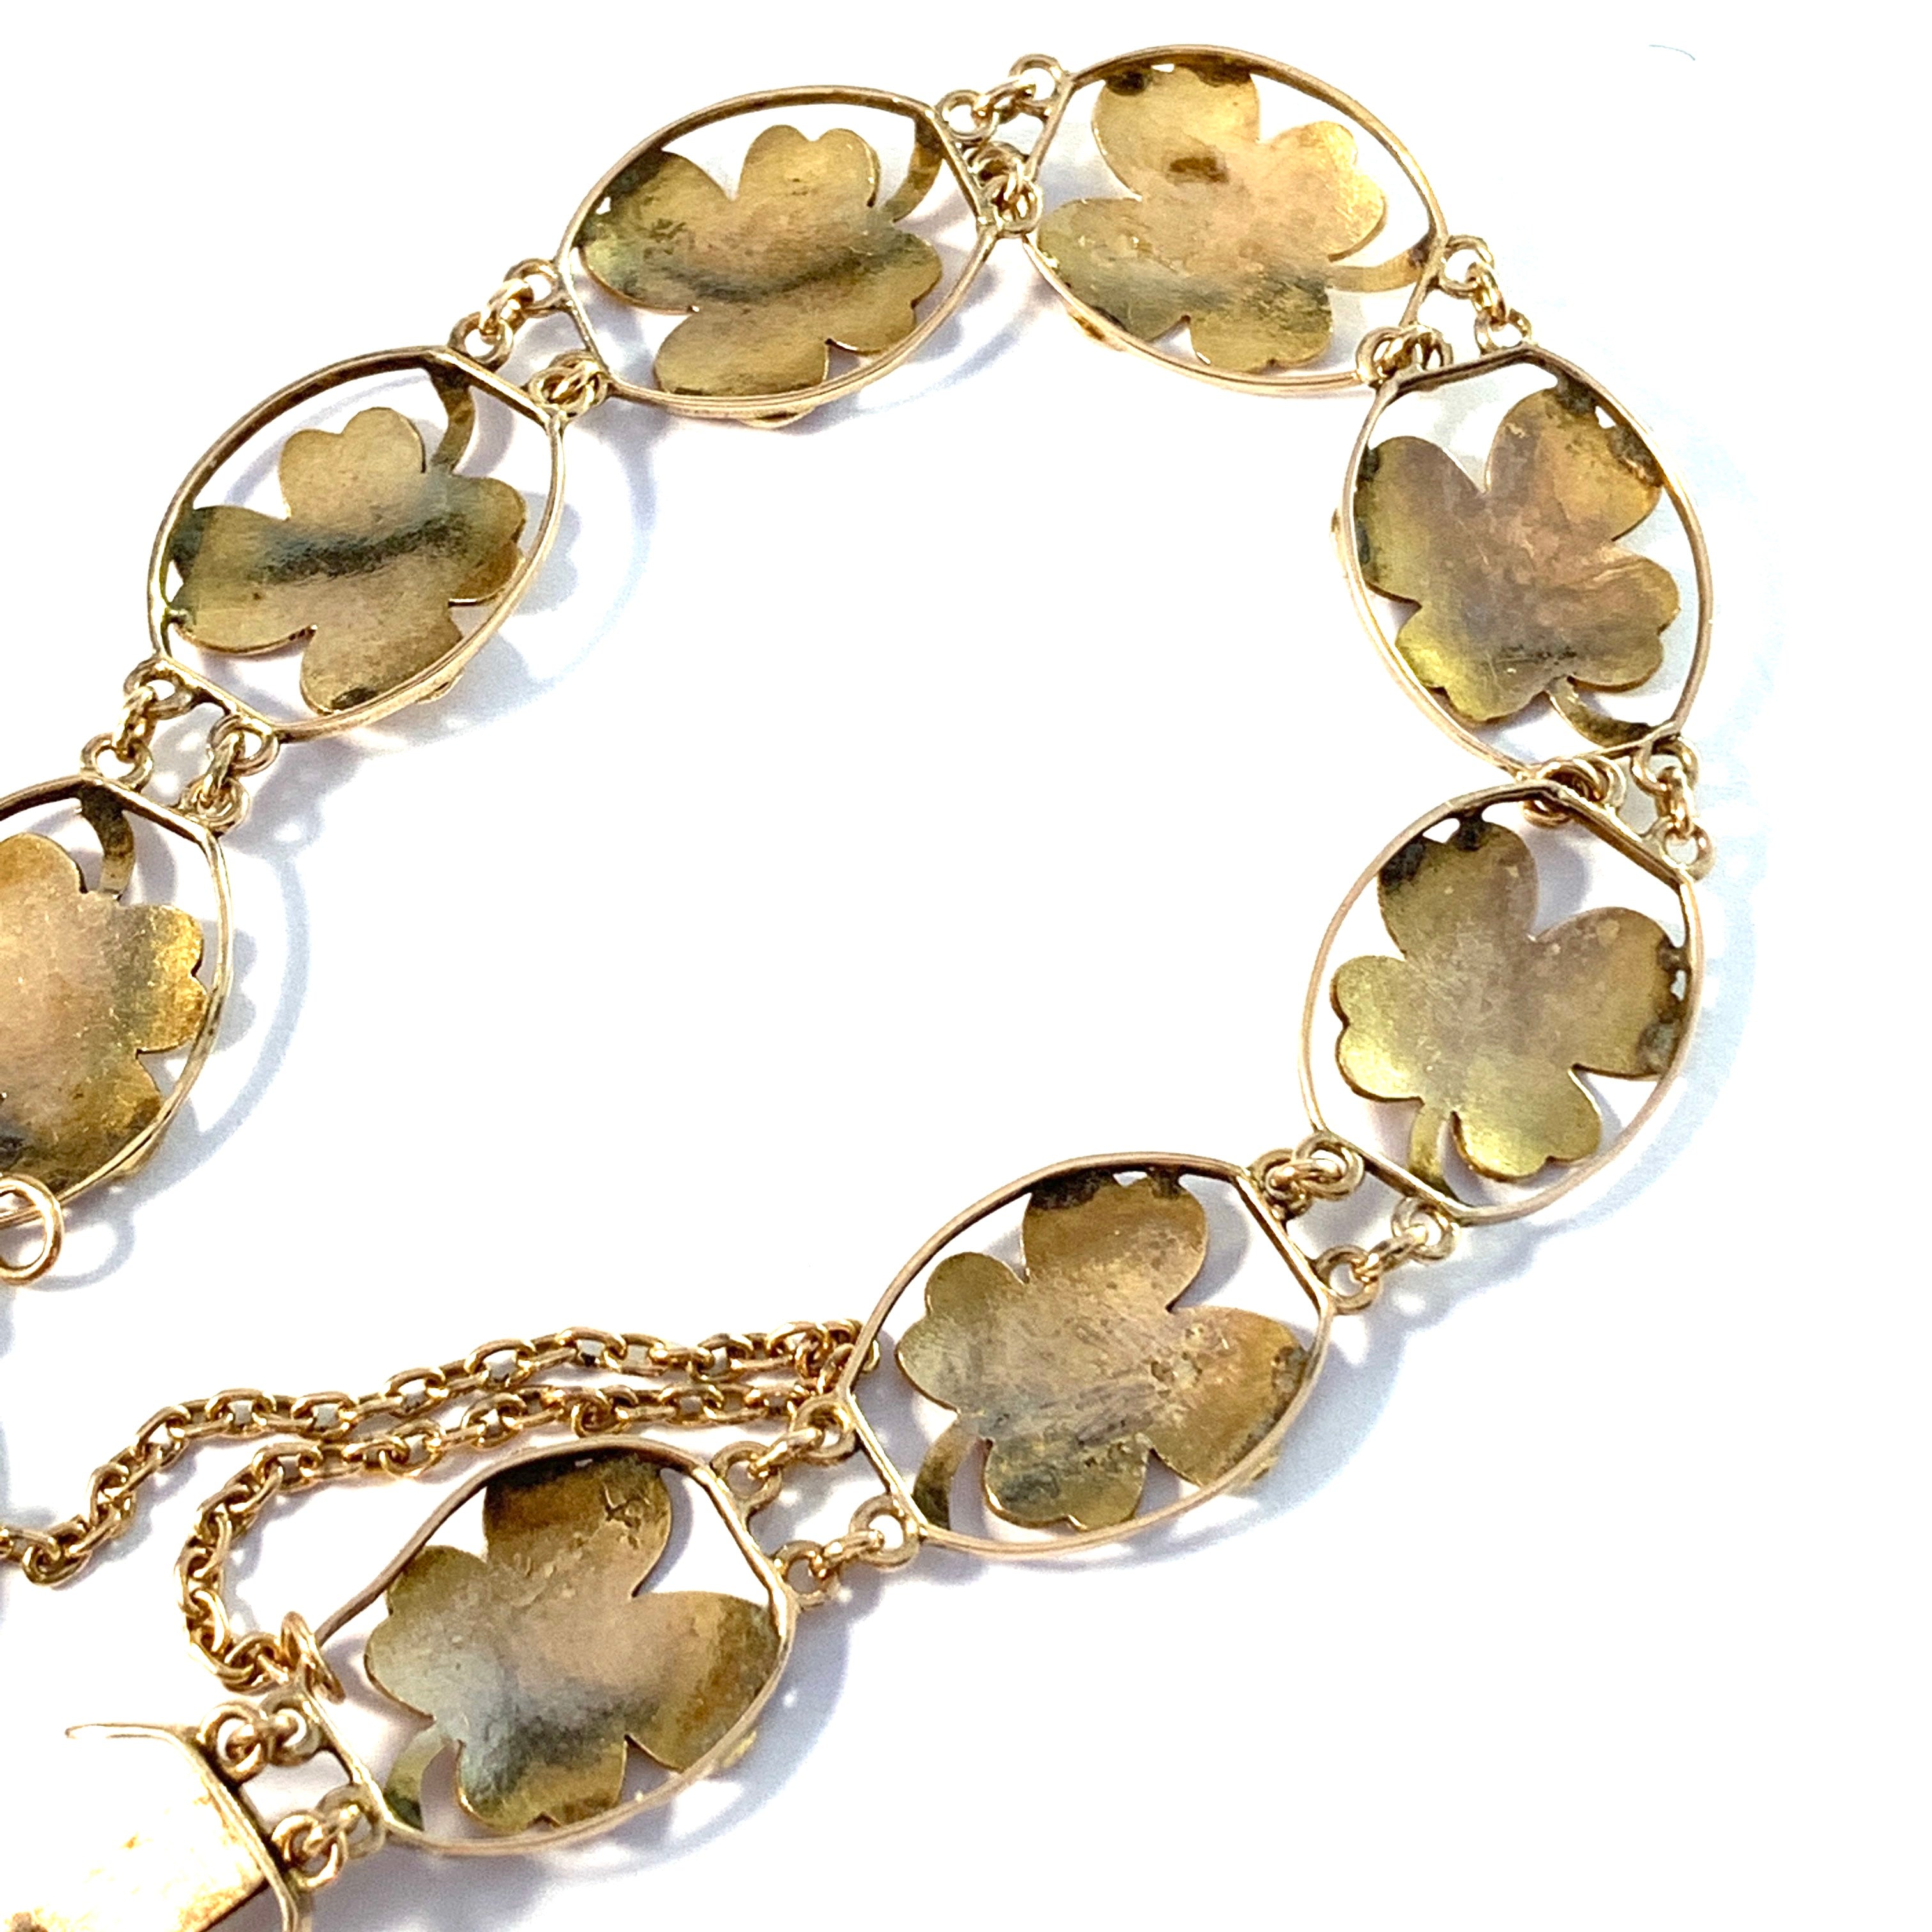 18K Gold Bracelet with Four-leaf Clover